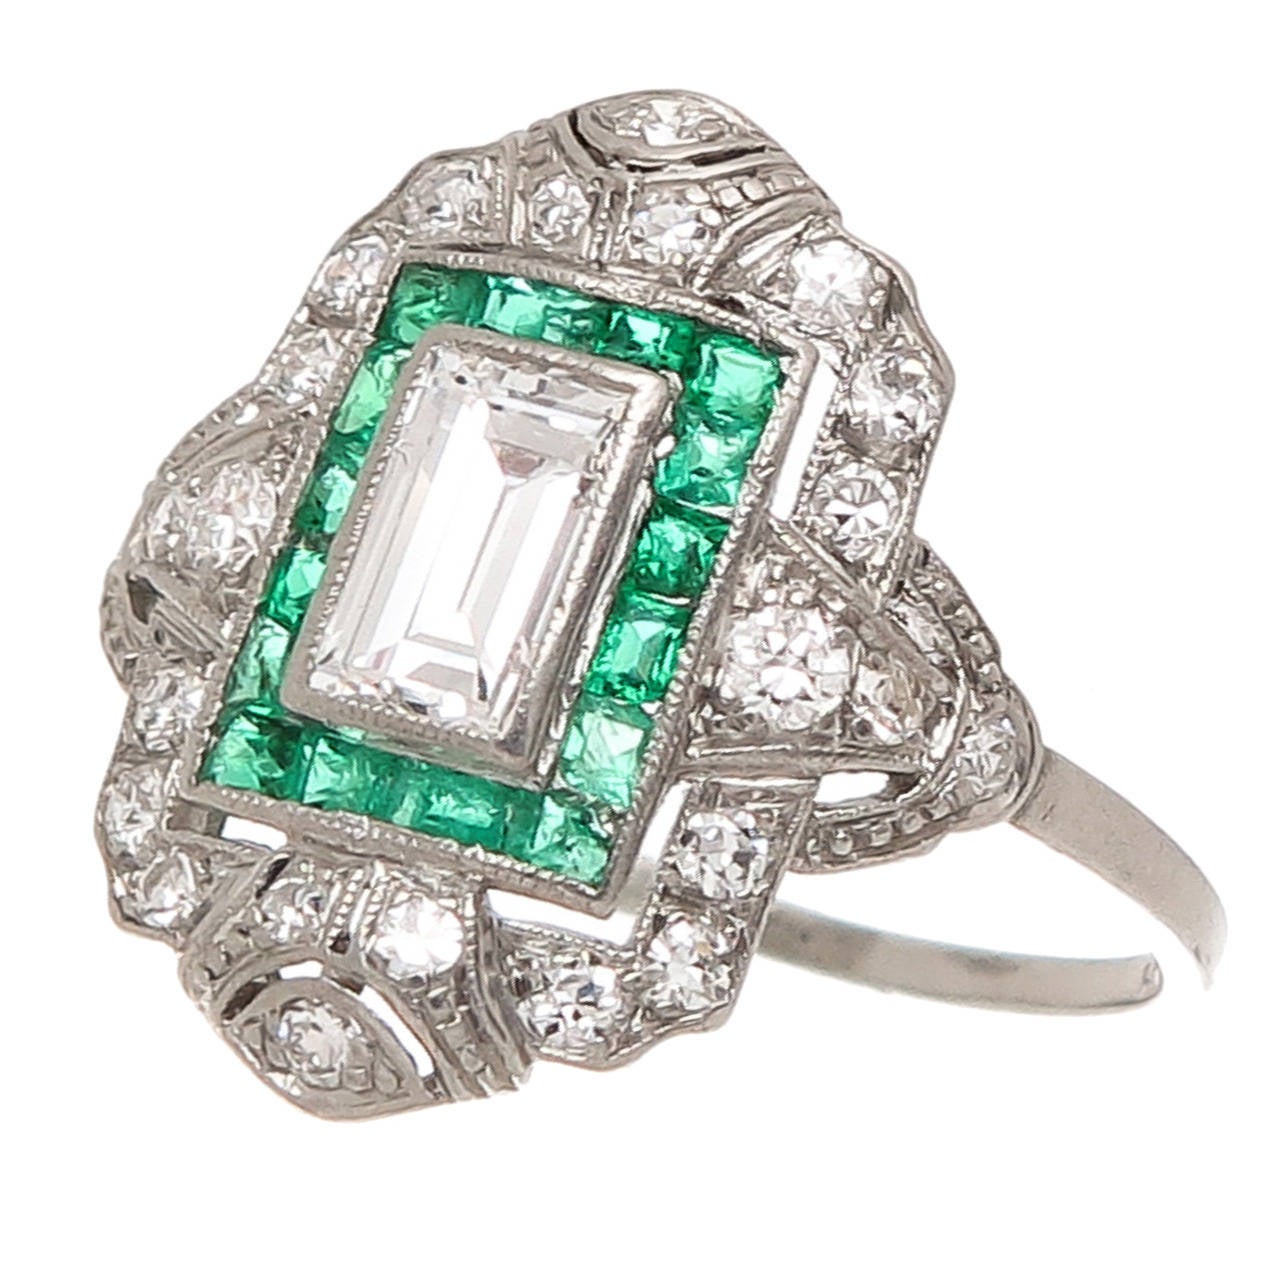 Antique Diamond Platinum Engagement Ring